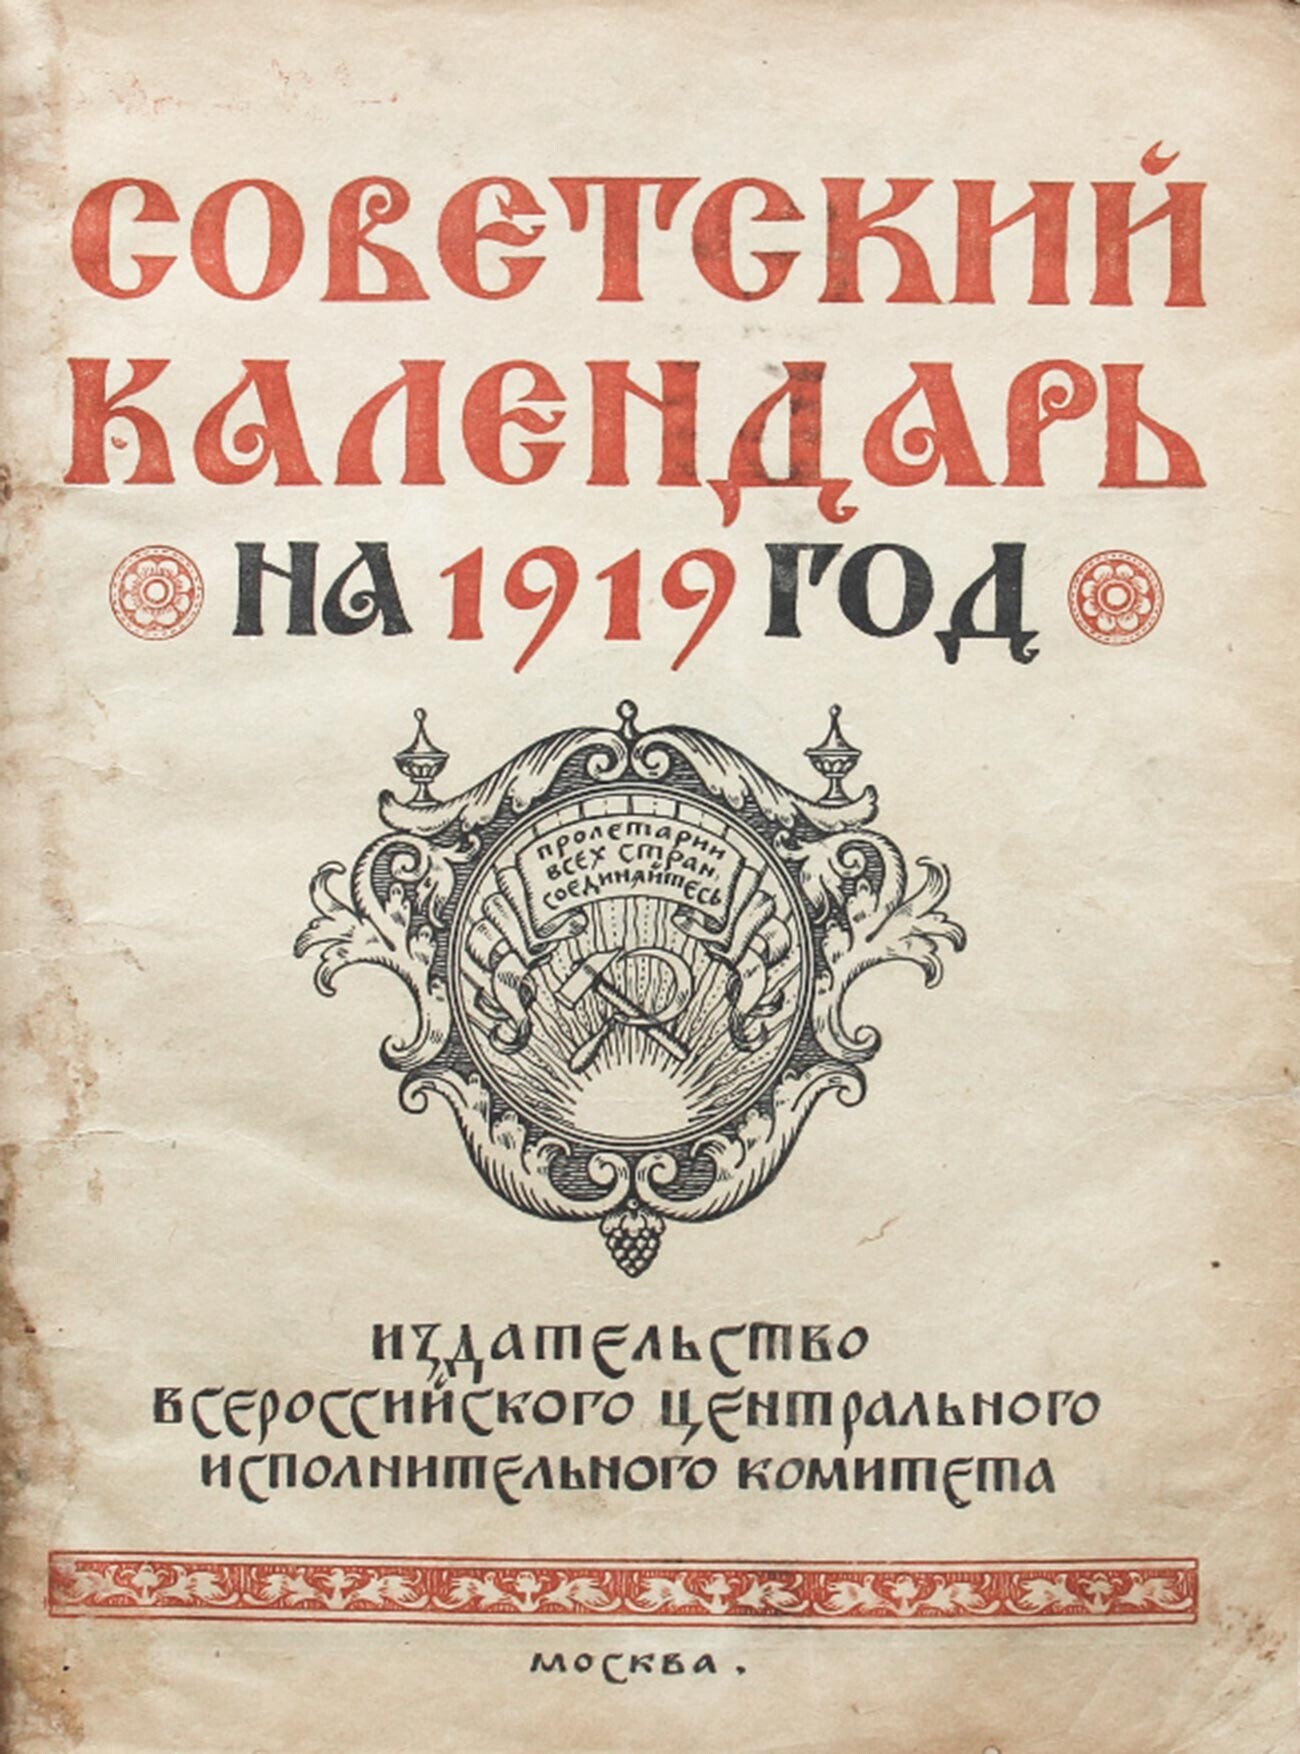 A cover of a Soviet calendar